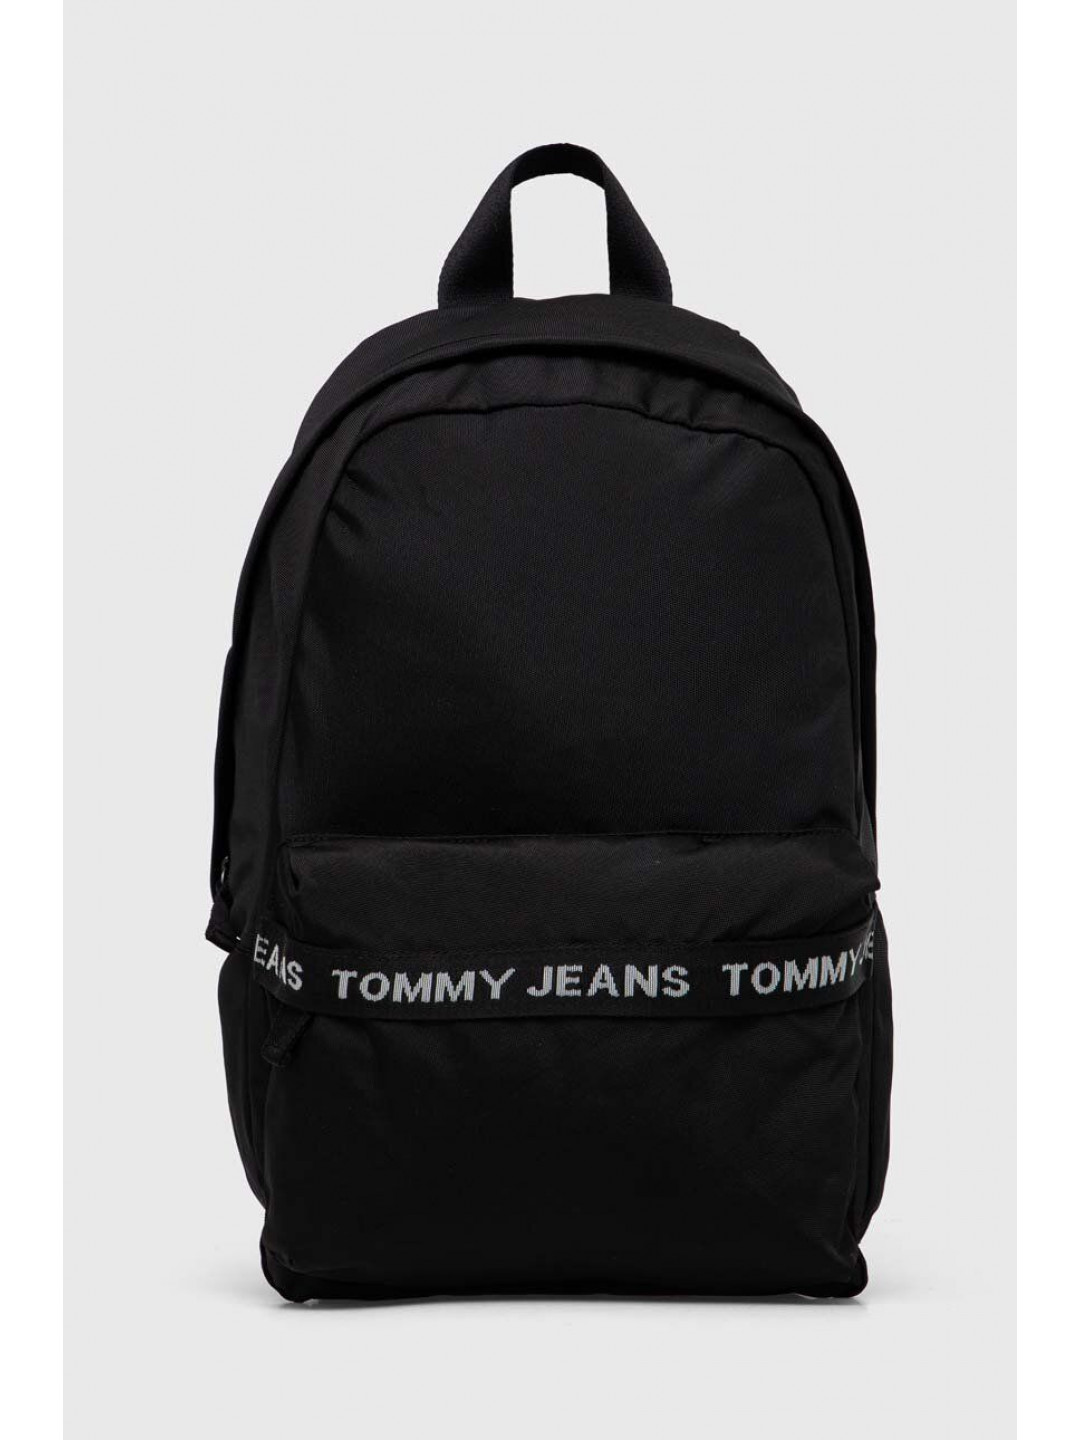 Batoh Tommy Jeans pánský černá barva velký s potiskem